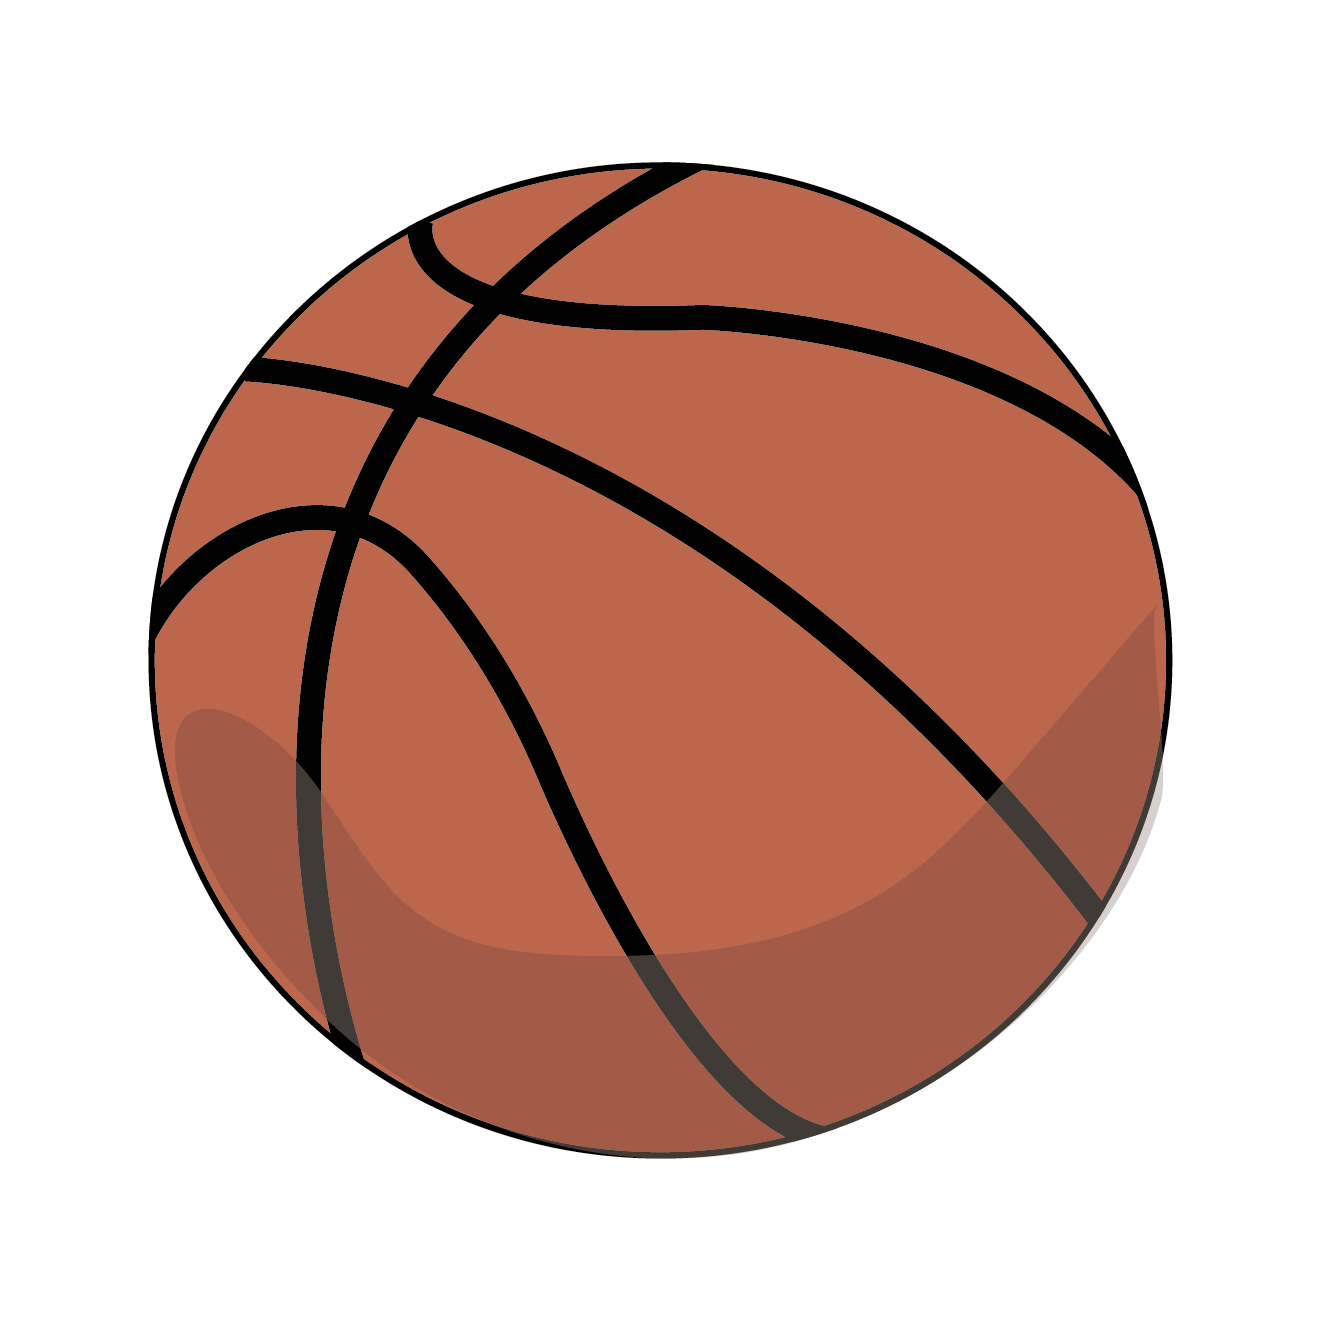 バスケ バスケットボール の 無料 イラスト スポーツ 商用フリー 無料 のイラスト素材なら イラストマンション